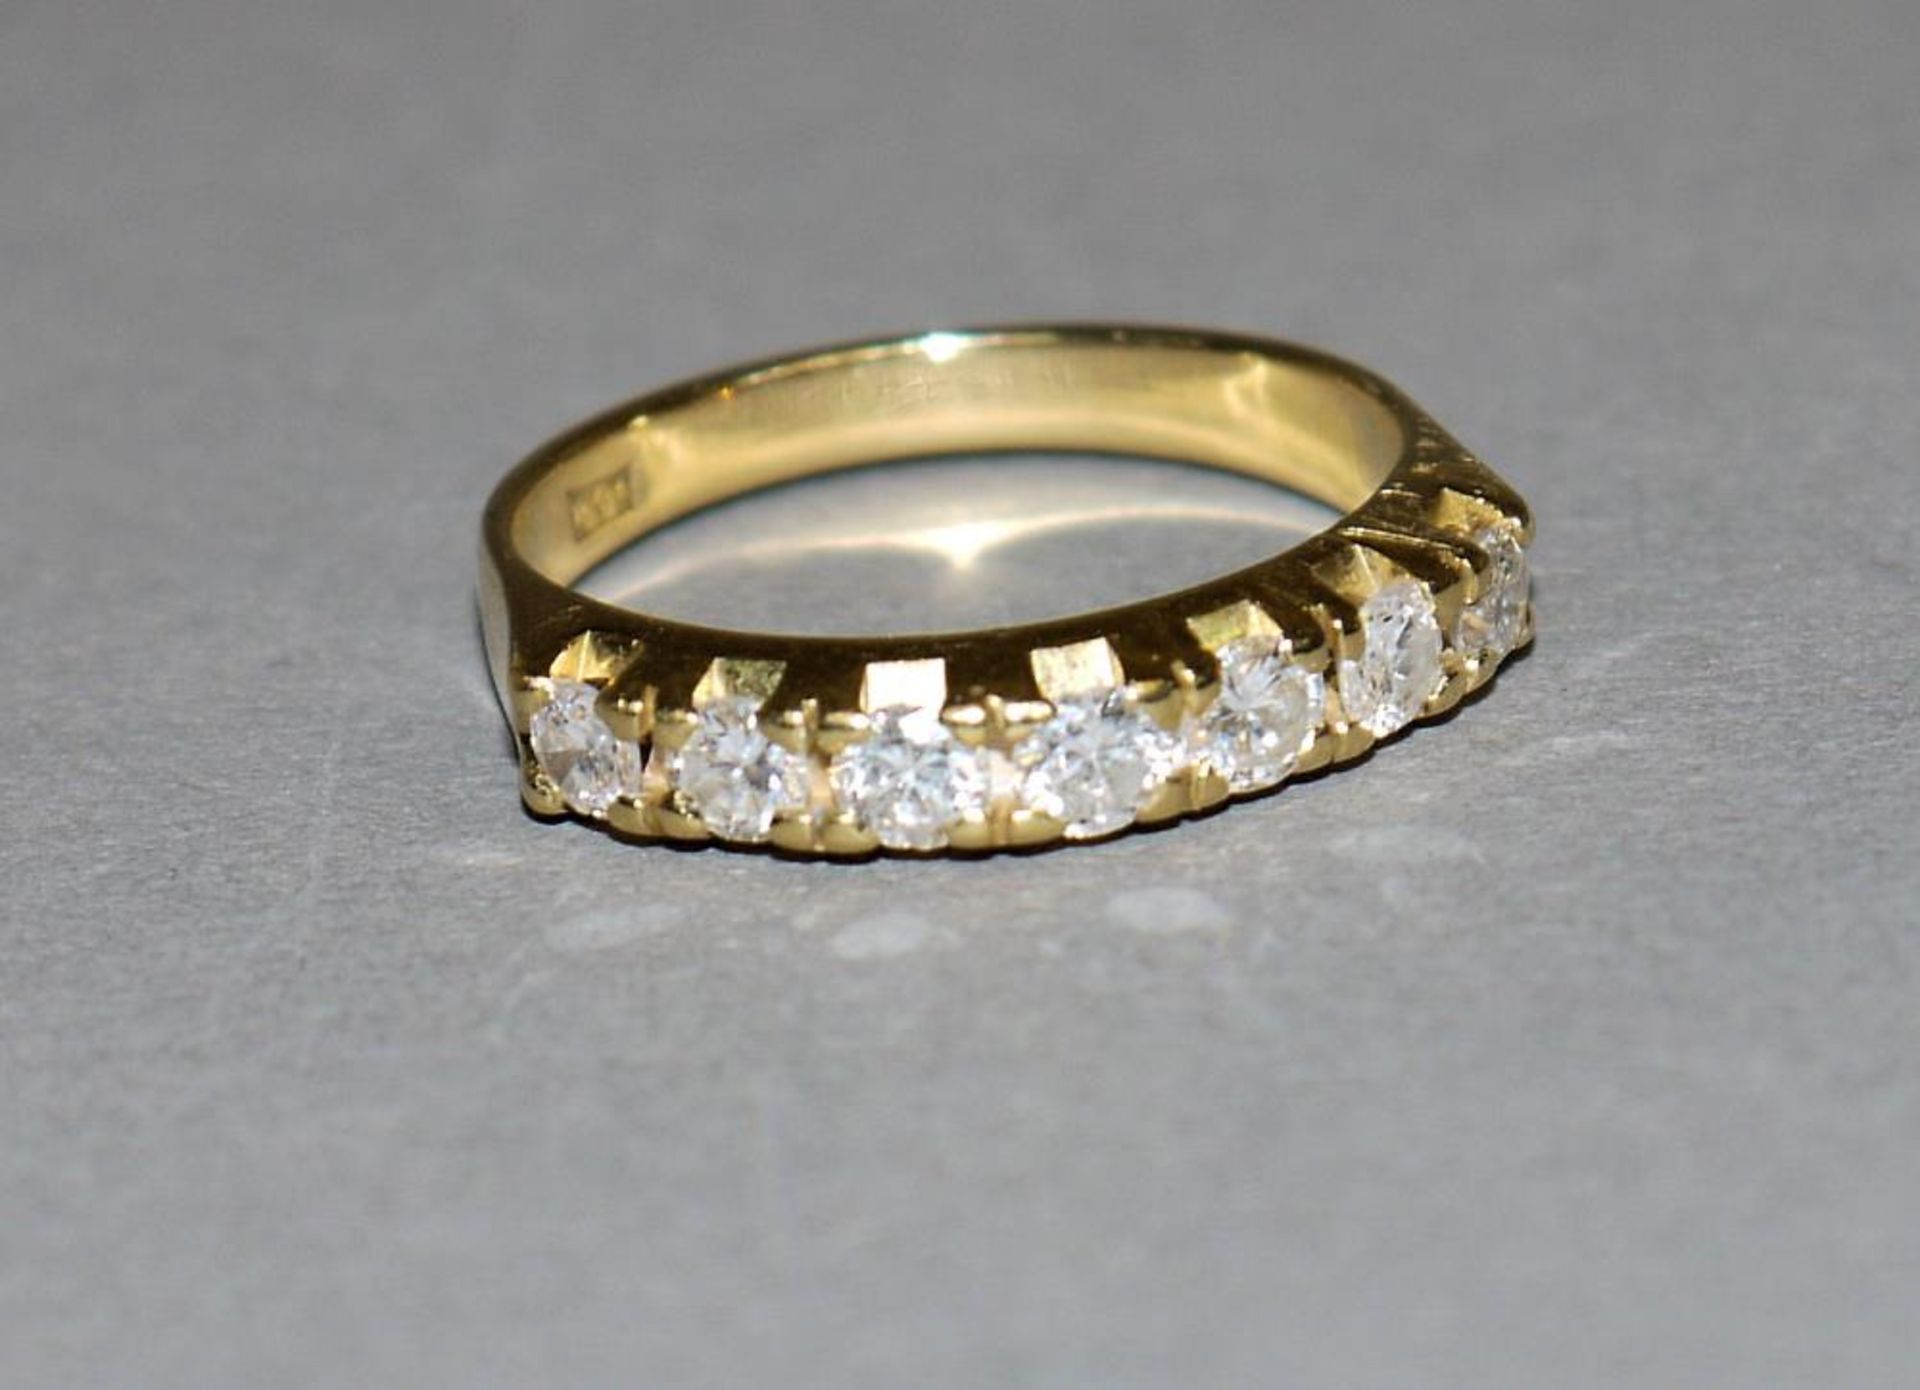 Brillant-Ring, Gold 18kt Gelbgold, Alliance-Ring, besetzt mit 7 Brillanten von zus. ca. 0,35-0,40